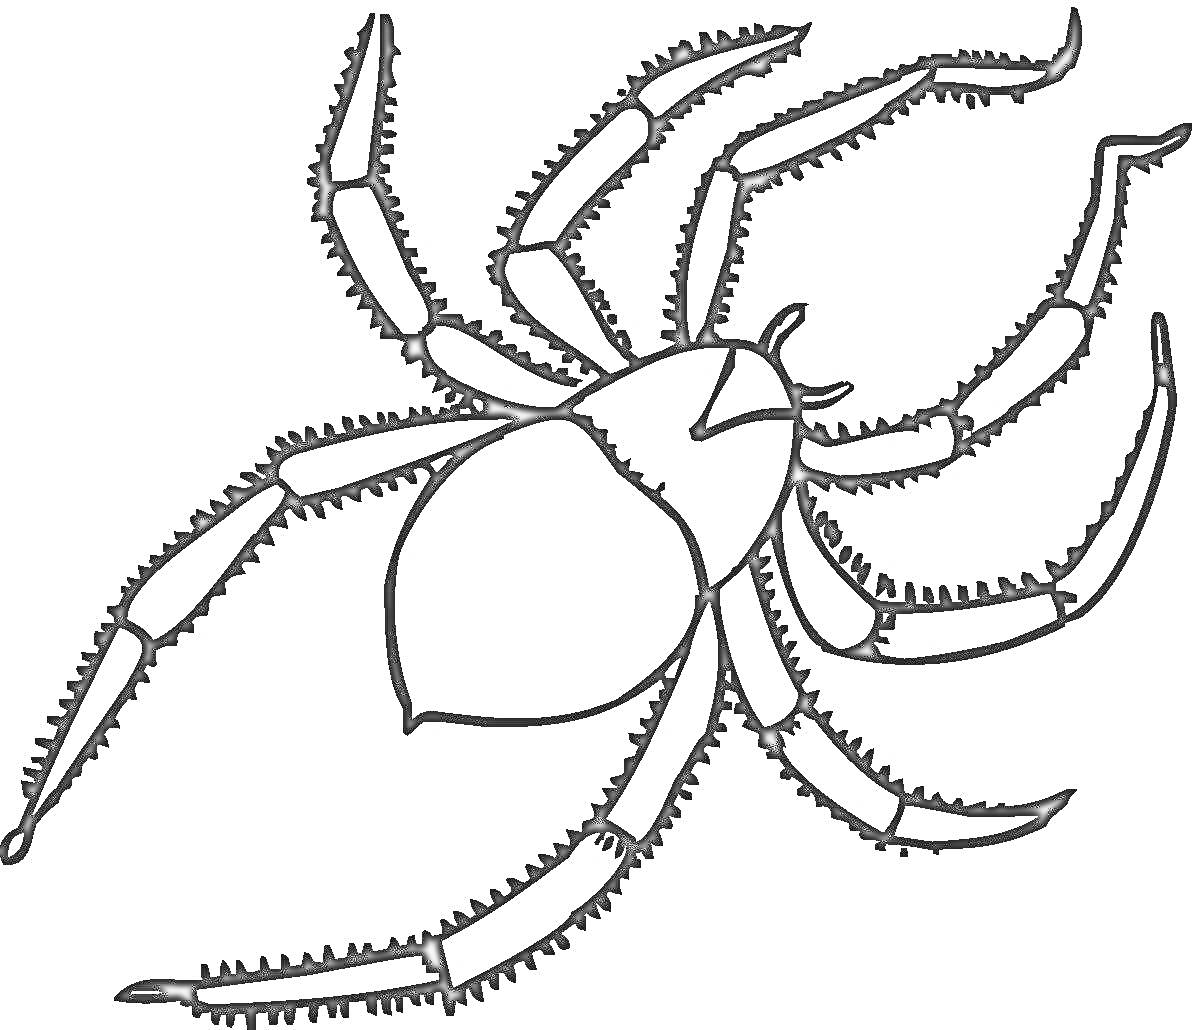 Раскраска Раскраска паука с восемью ногами и телом, схемный рисунок для детей